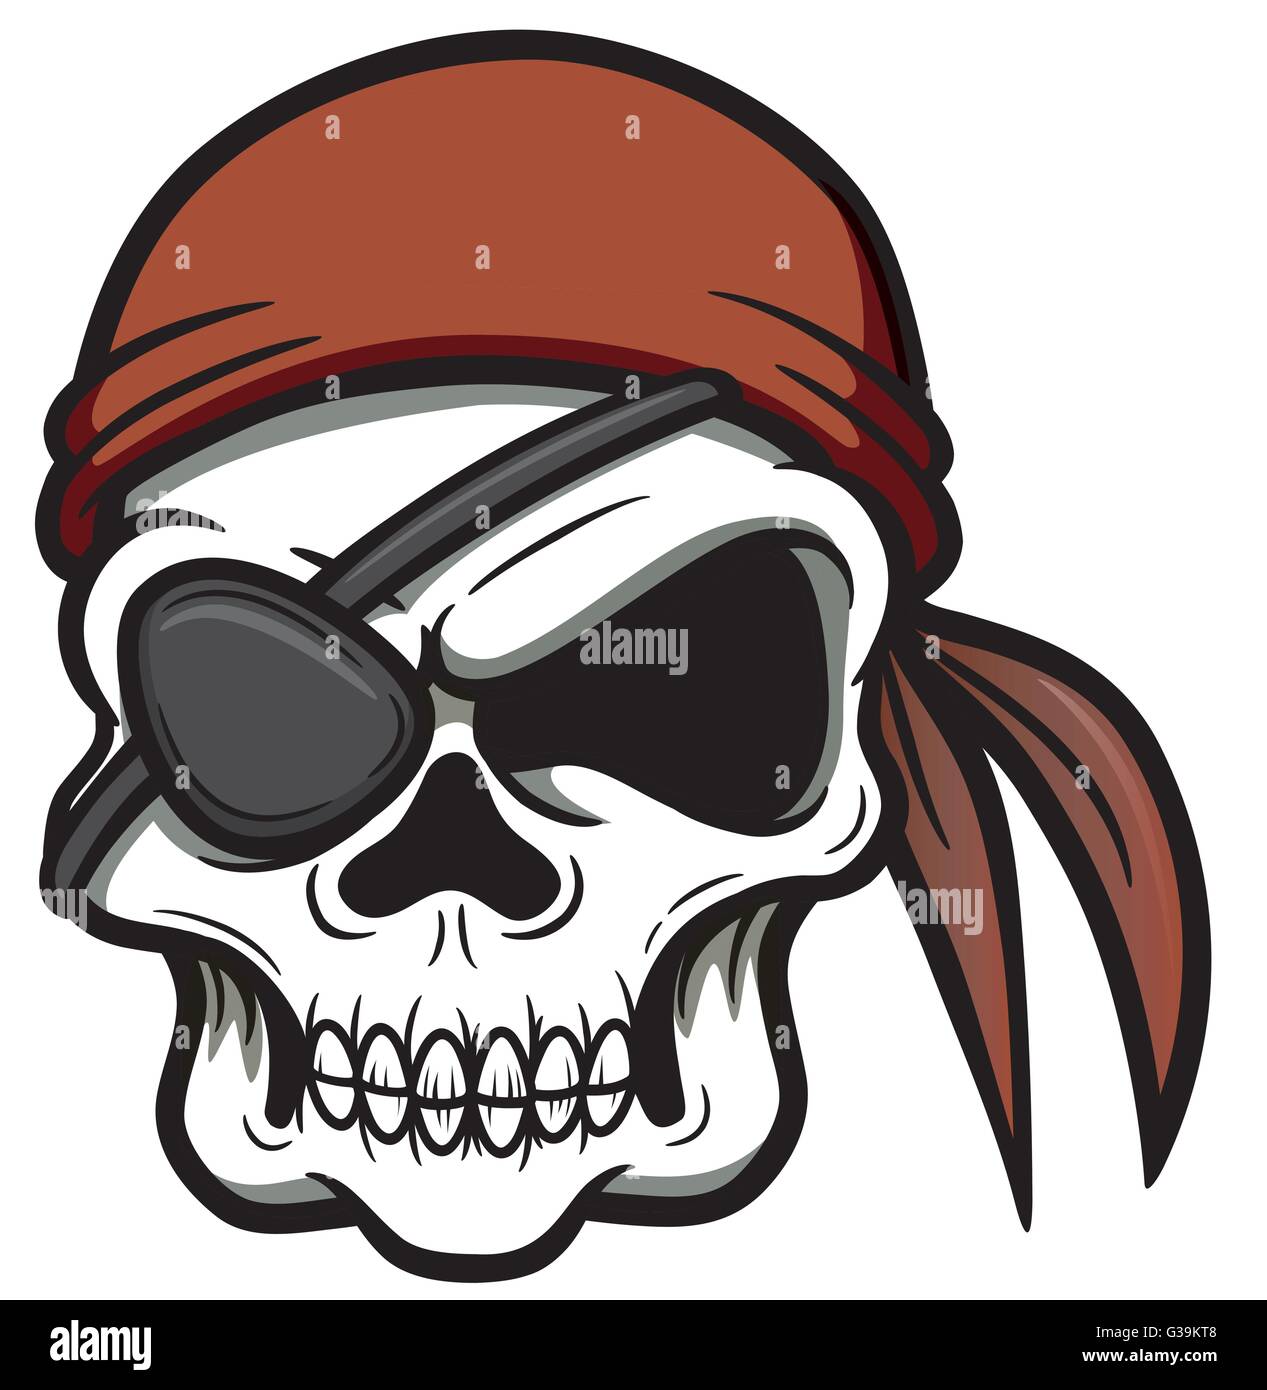 Vektor-Illustration von Pirate skull Stock Vektor